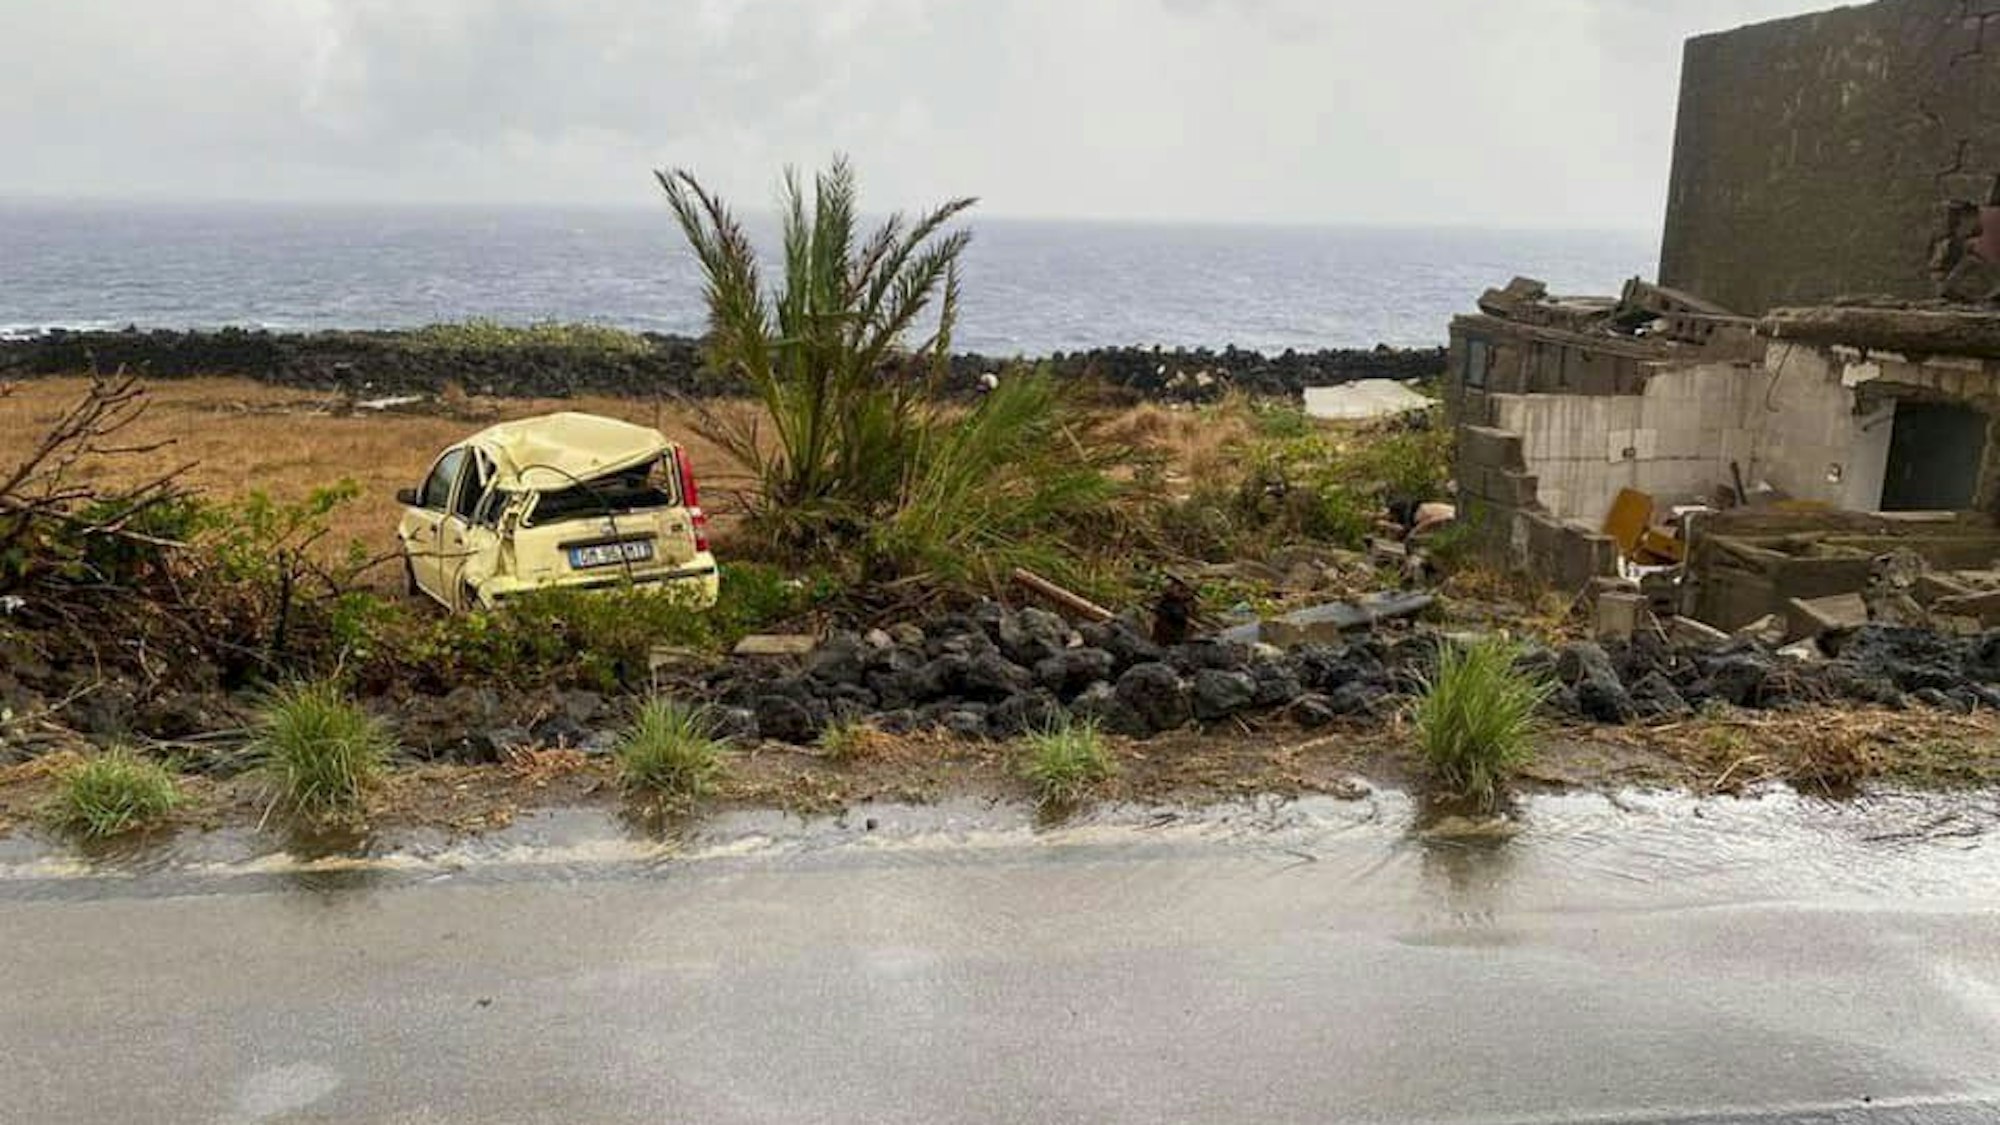 Die Vulkaninsel Pantelleria (Sizilien) wurde von einem Tornado erschüttert. Zwei Menschen sind gestorben.